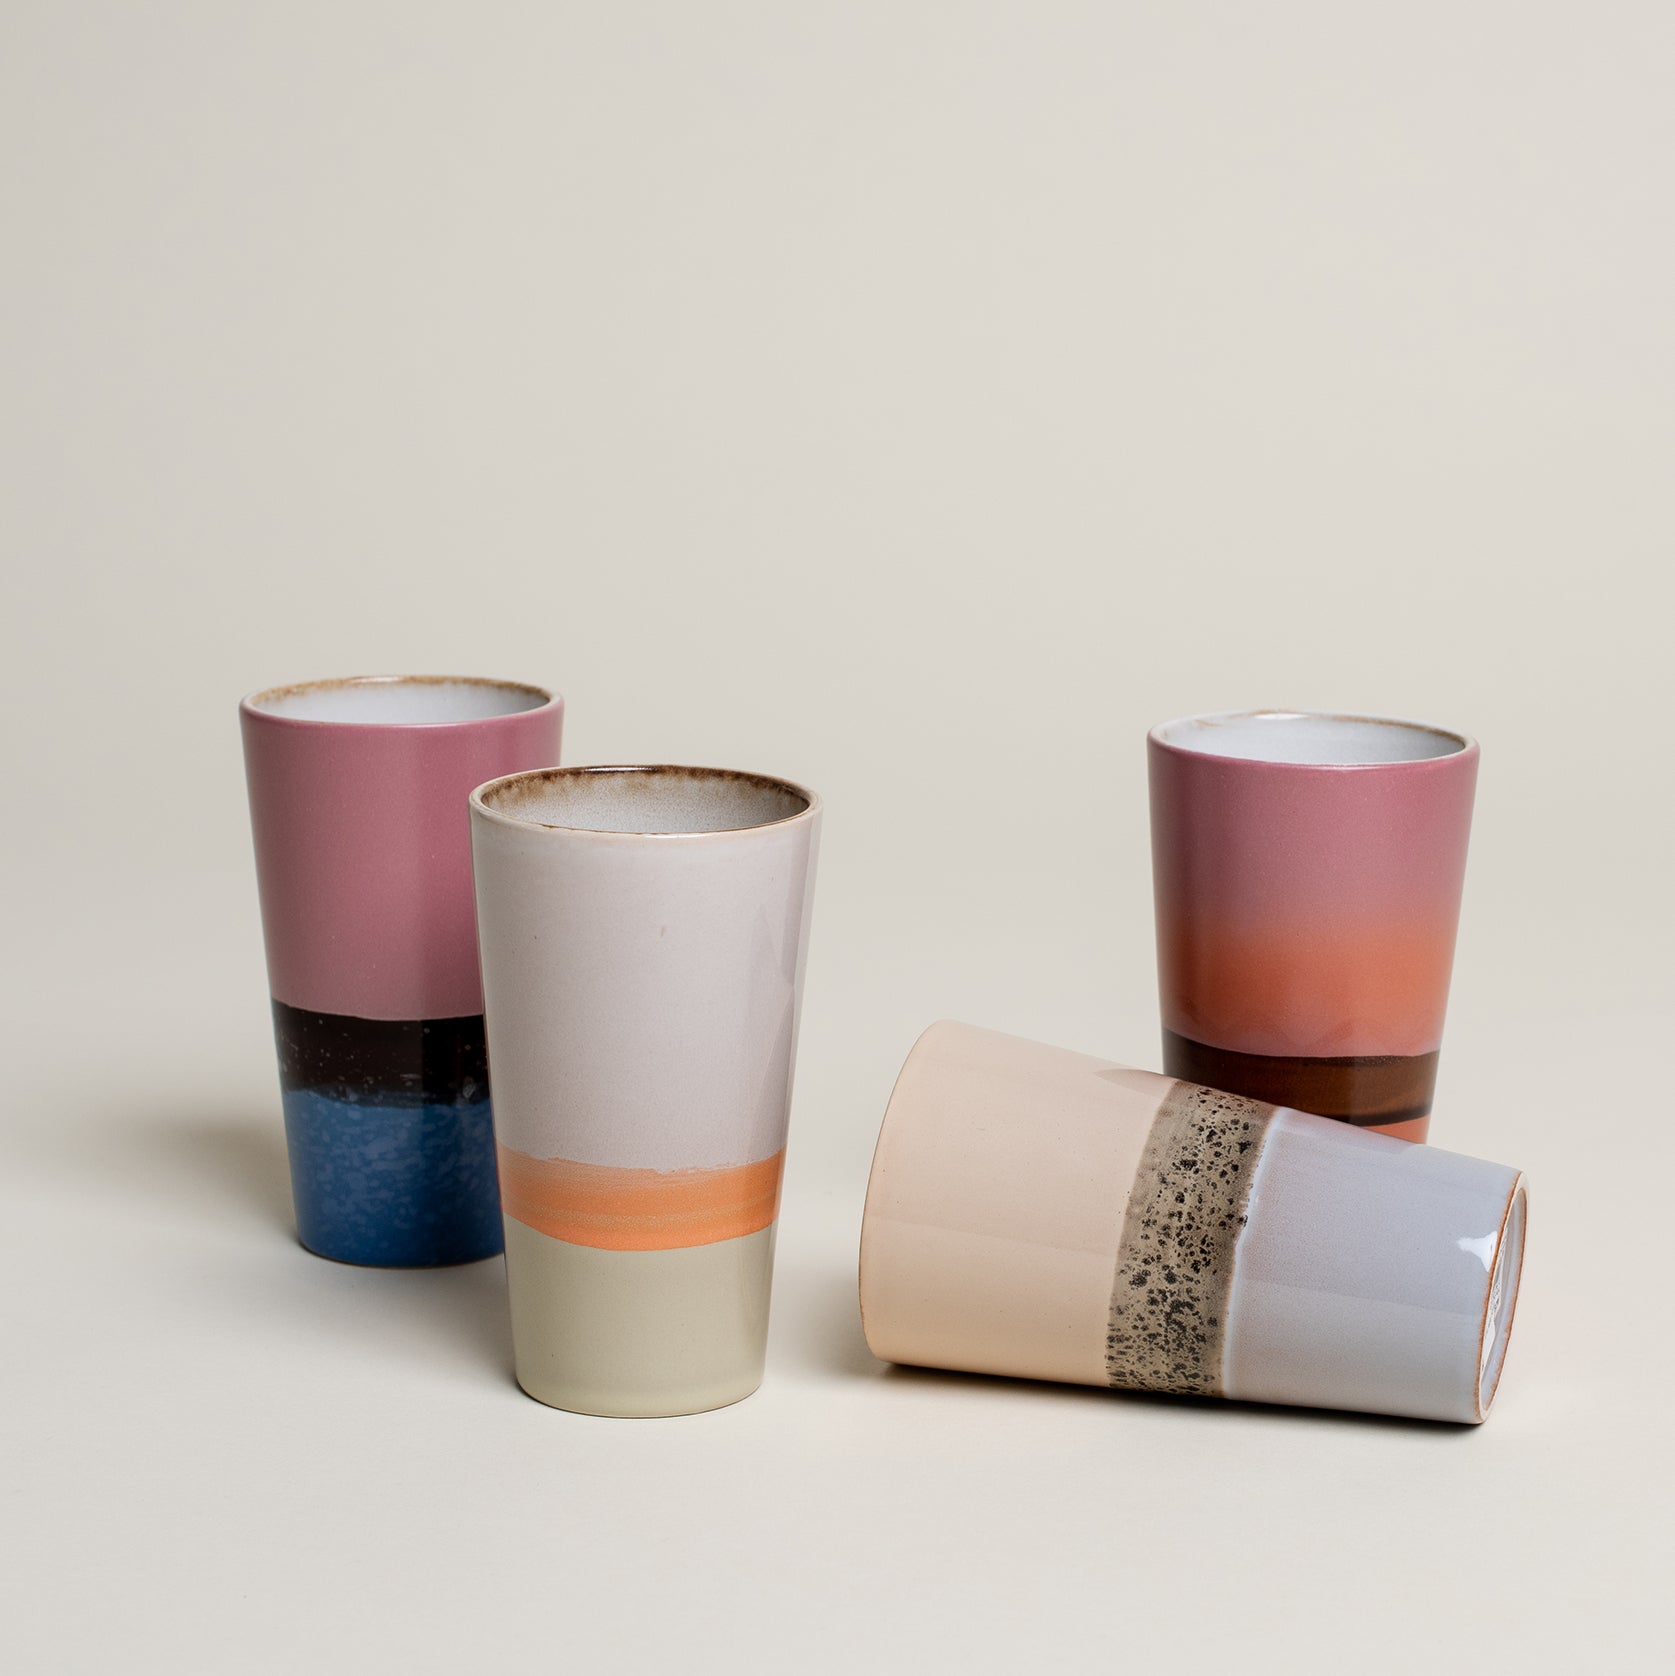 Vier Tassen im 70er retro Stil in unterschiedlichen Fraben von pink, blau, orange und Beige, grün und braun. Edit alt text